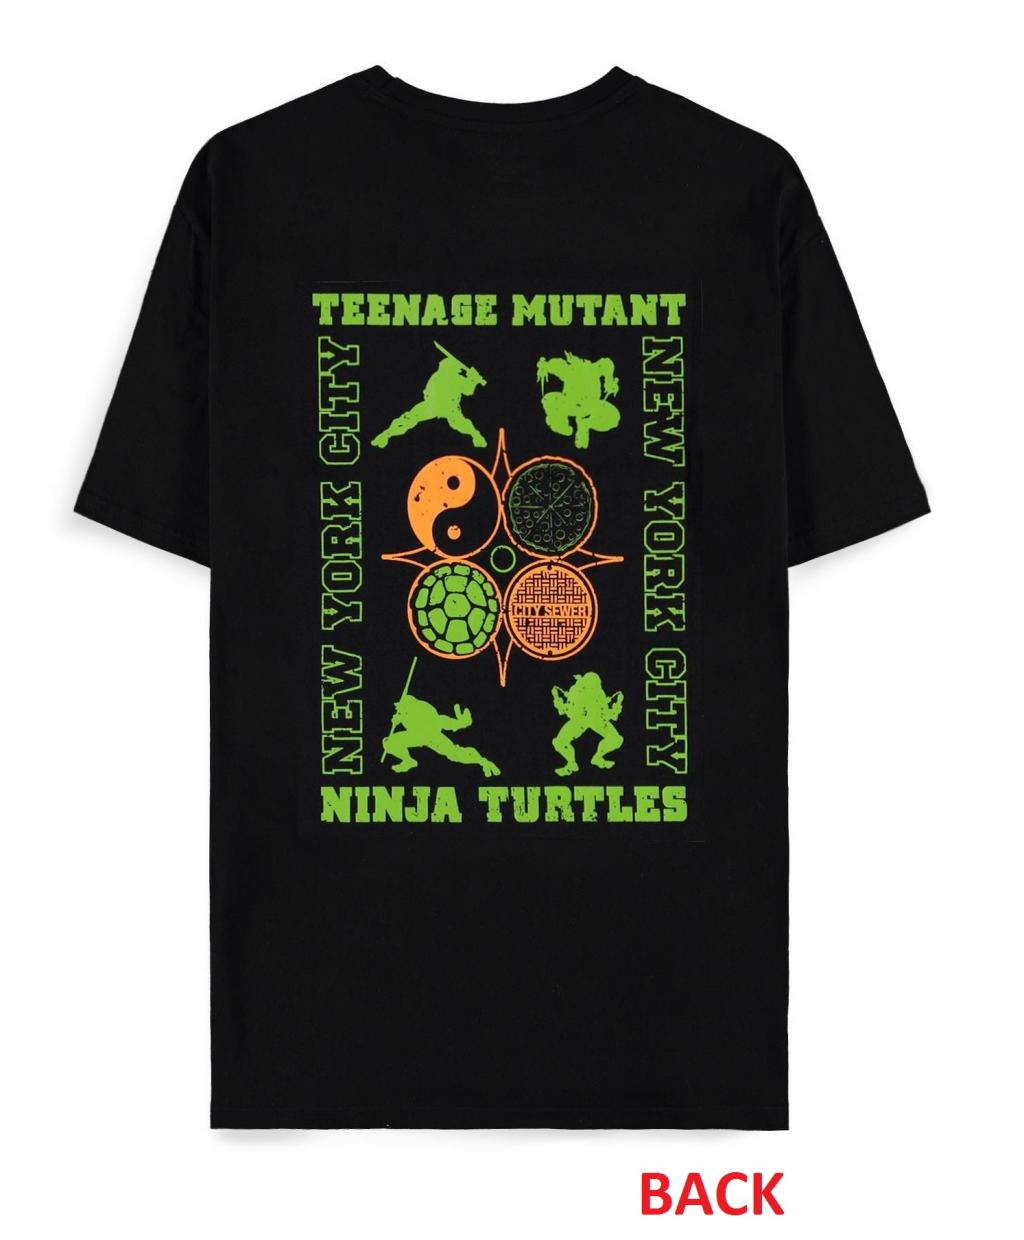 NINJA TURTLES - Men's T-Shirt (S)